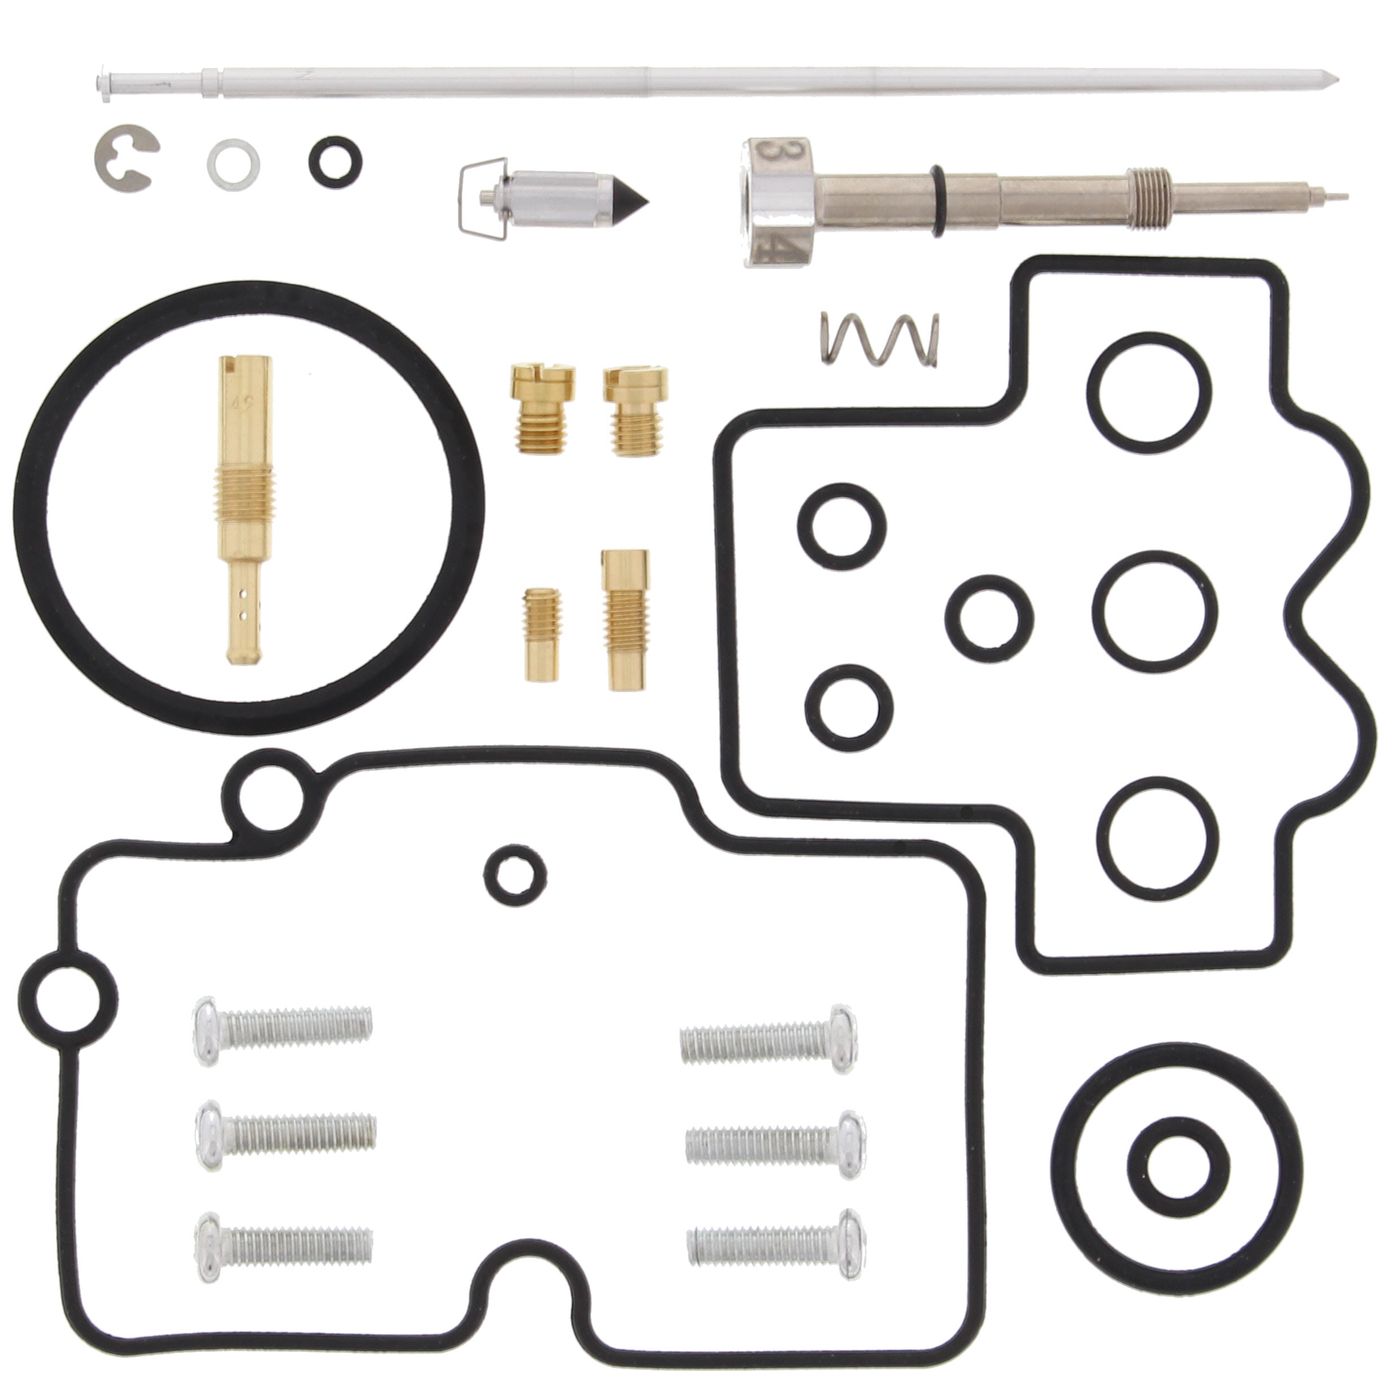 Wrp Carb Repair Kits - WRP261372 image